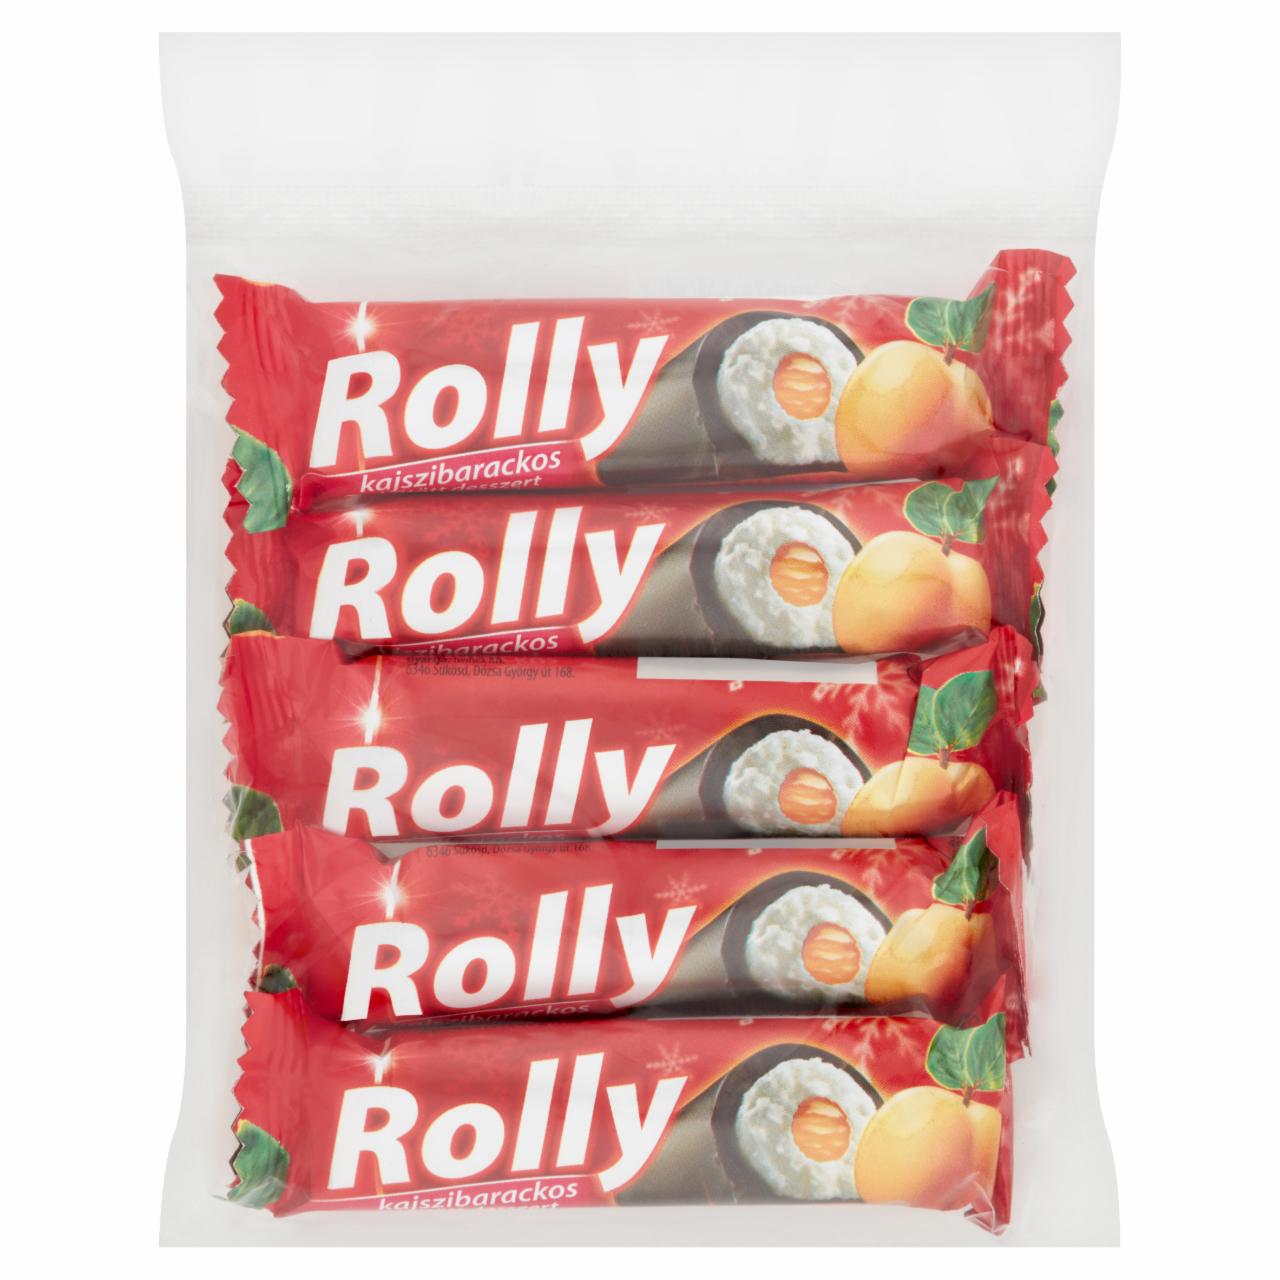 Képek - Rolly kajszibarackos hűtött desszert 5 x 30 g